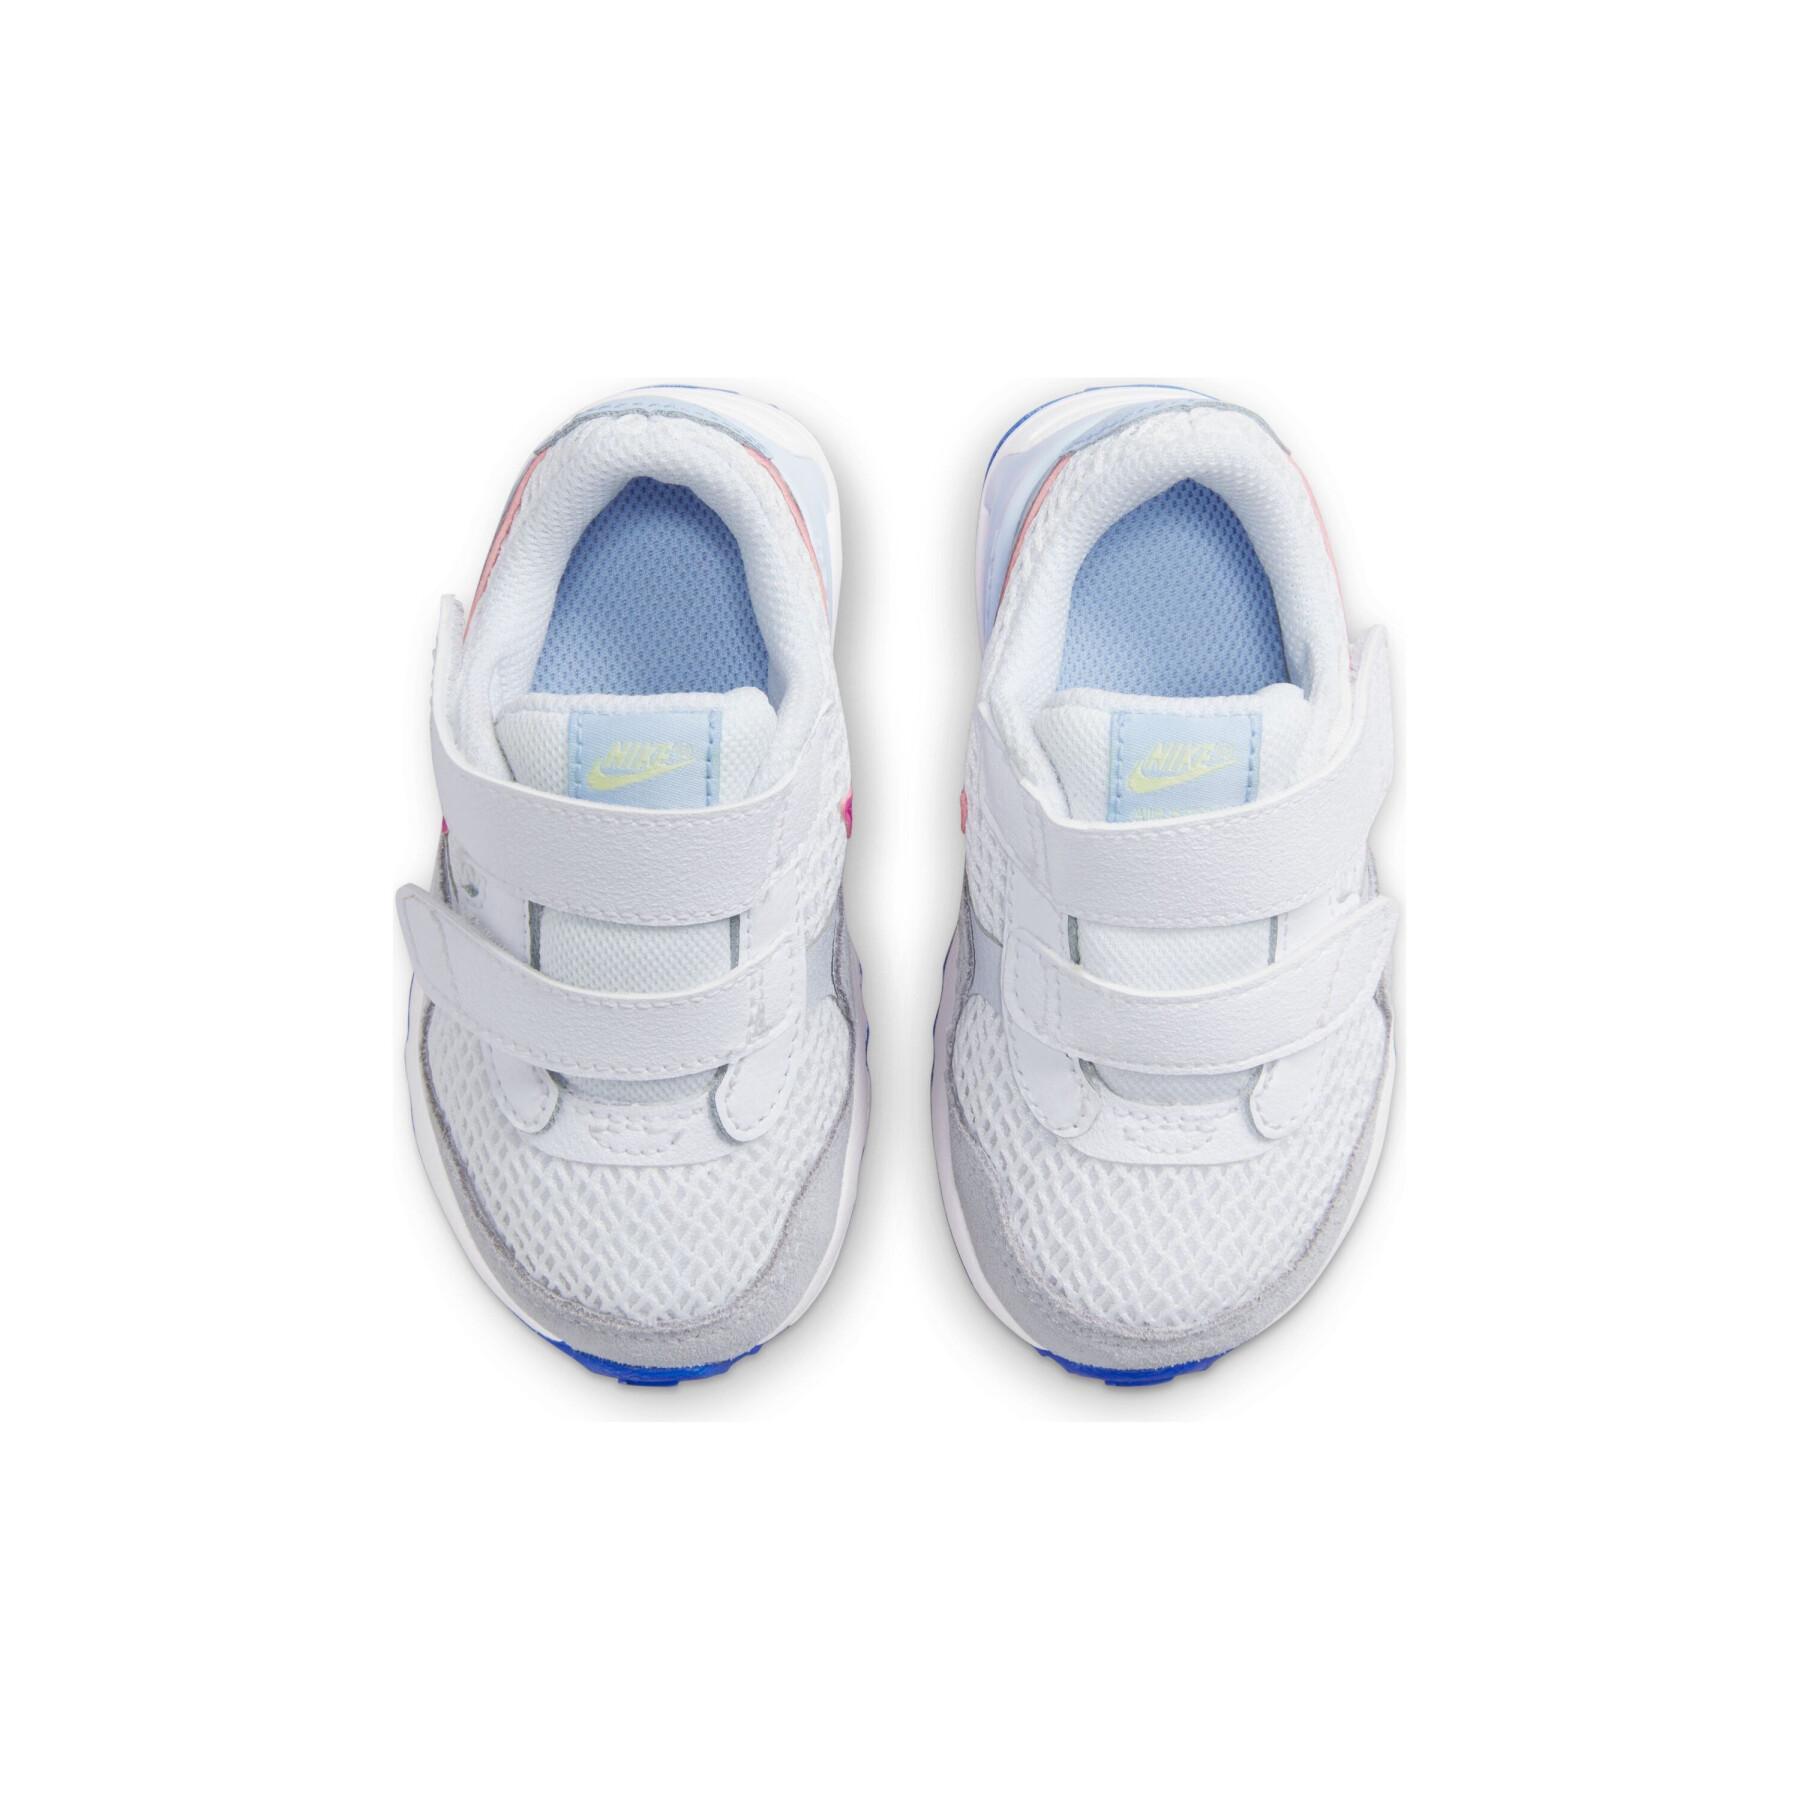 Formadores de bebés Nike Air Max Systm